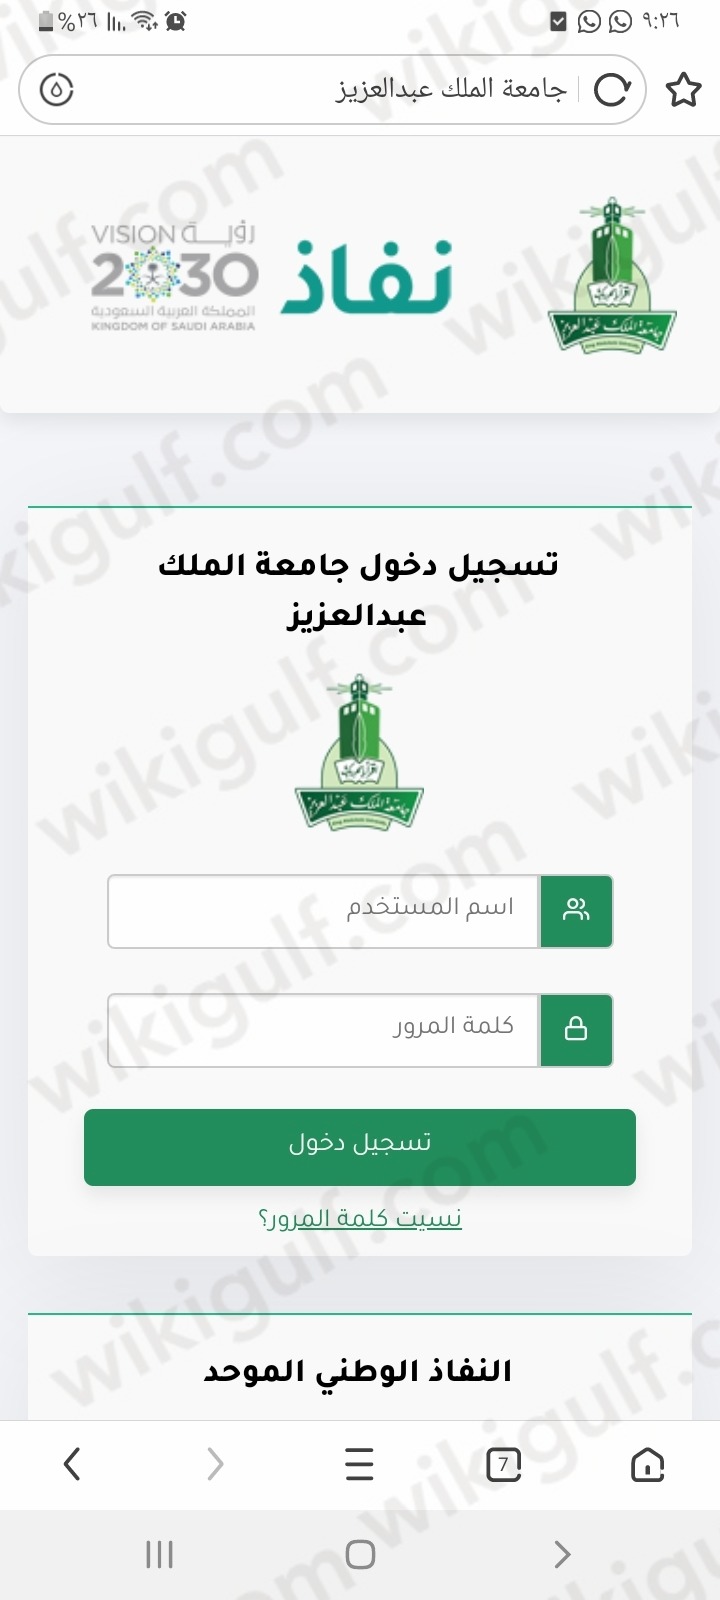 طريقة تسجيل الدخول الموحد جامعة الملك عبدالعزيز